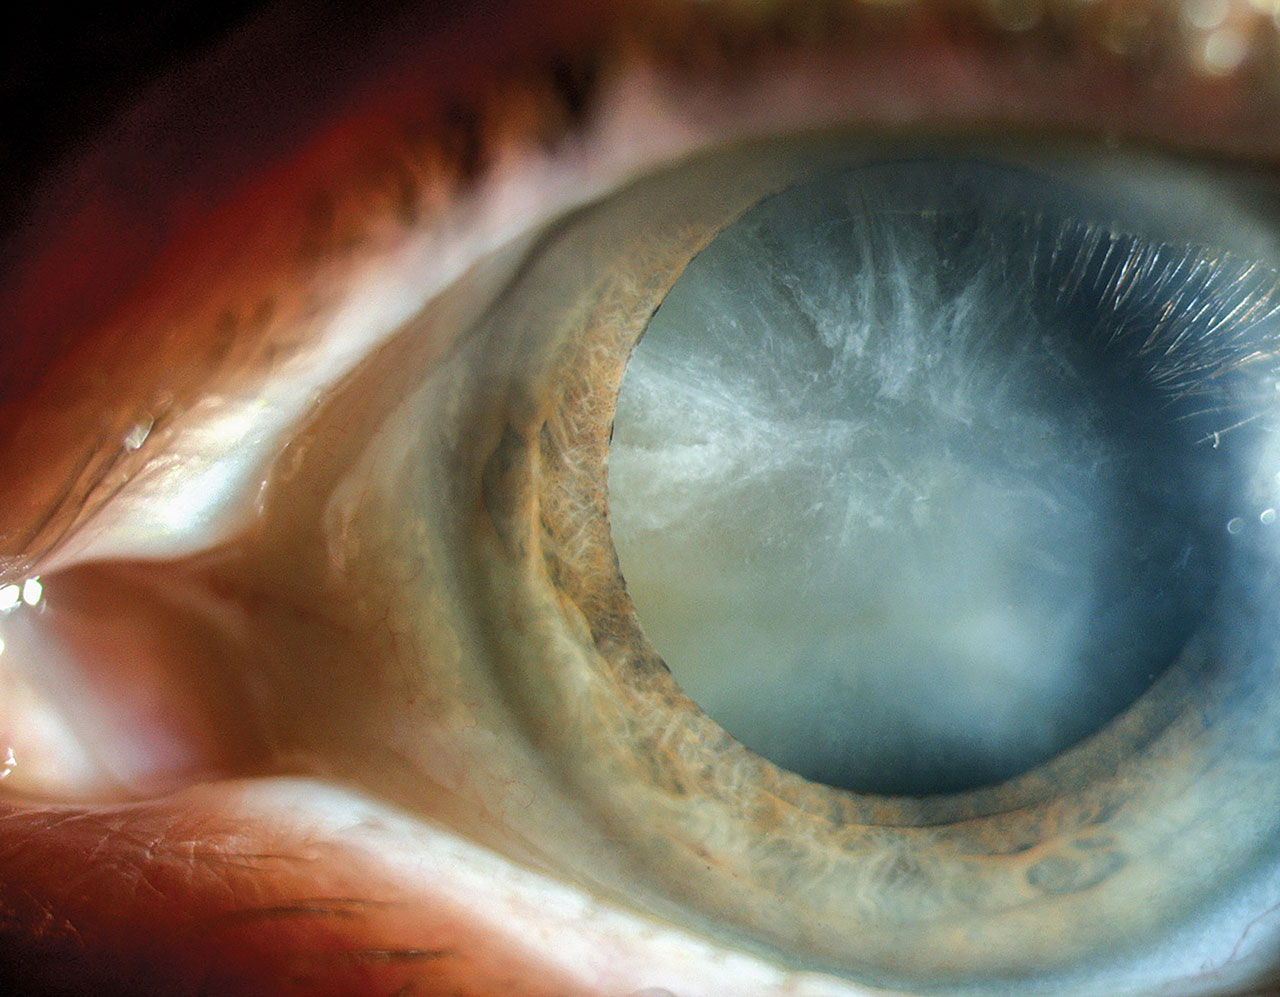 双眼白内障合并先天性晶状体缺损一例 - 中华眼科杂志